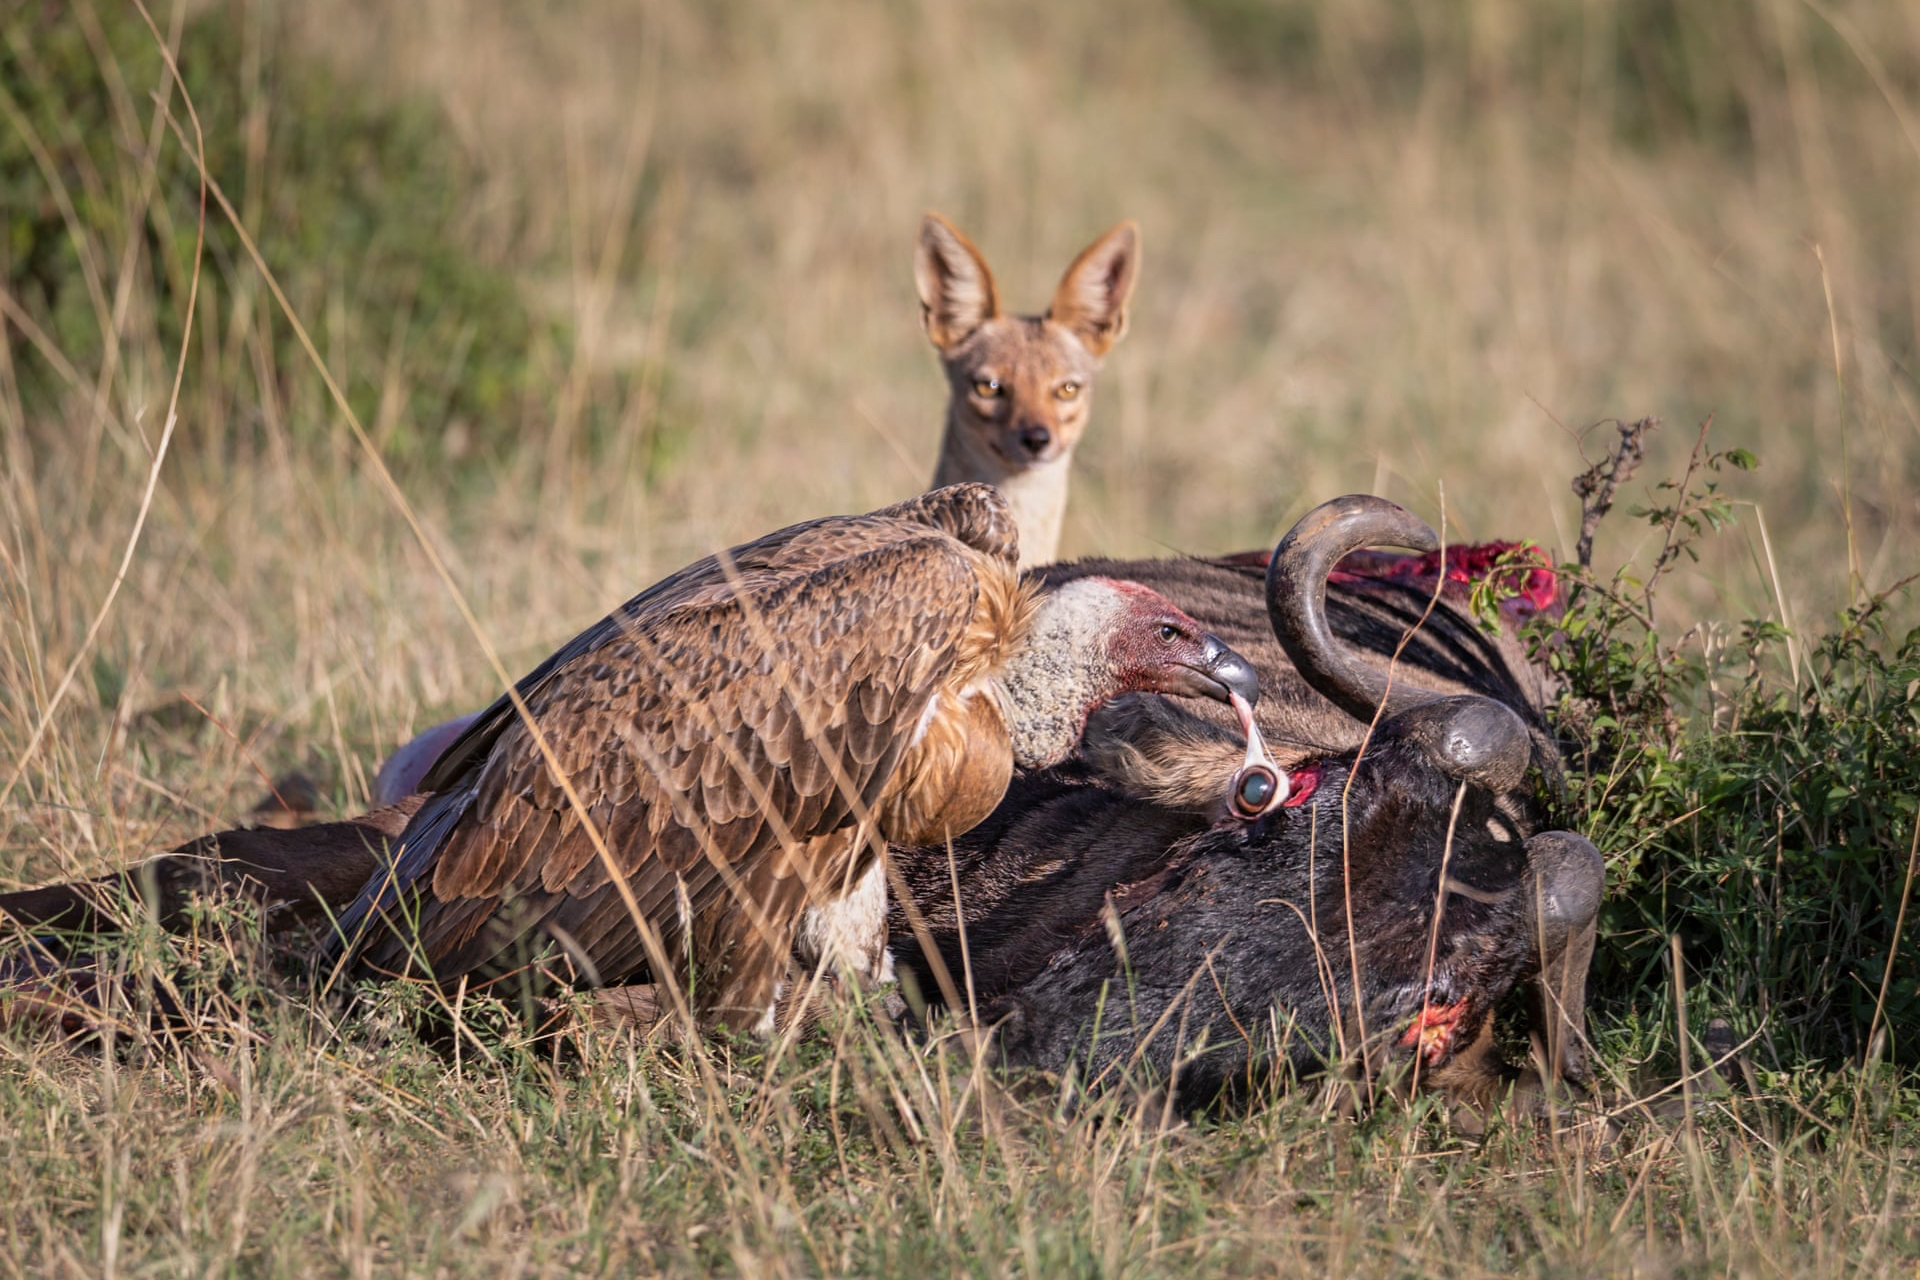 Гриф и лисица пируют у дикой свиньи, Масаи Мара, Кения. Фото: Ашок Бехера. Победитель в категории &laquo;Поведение&nbsp;&mdash; птицы&raquo;